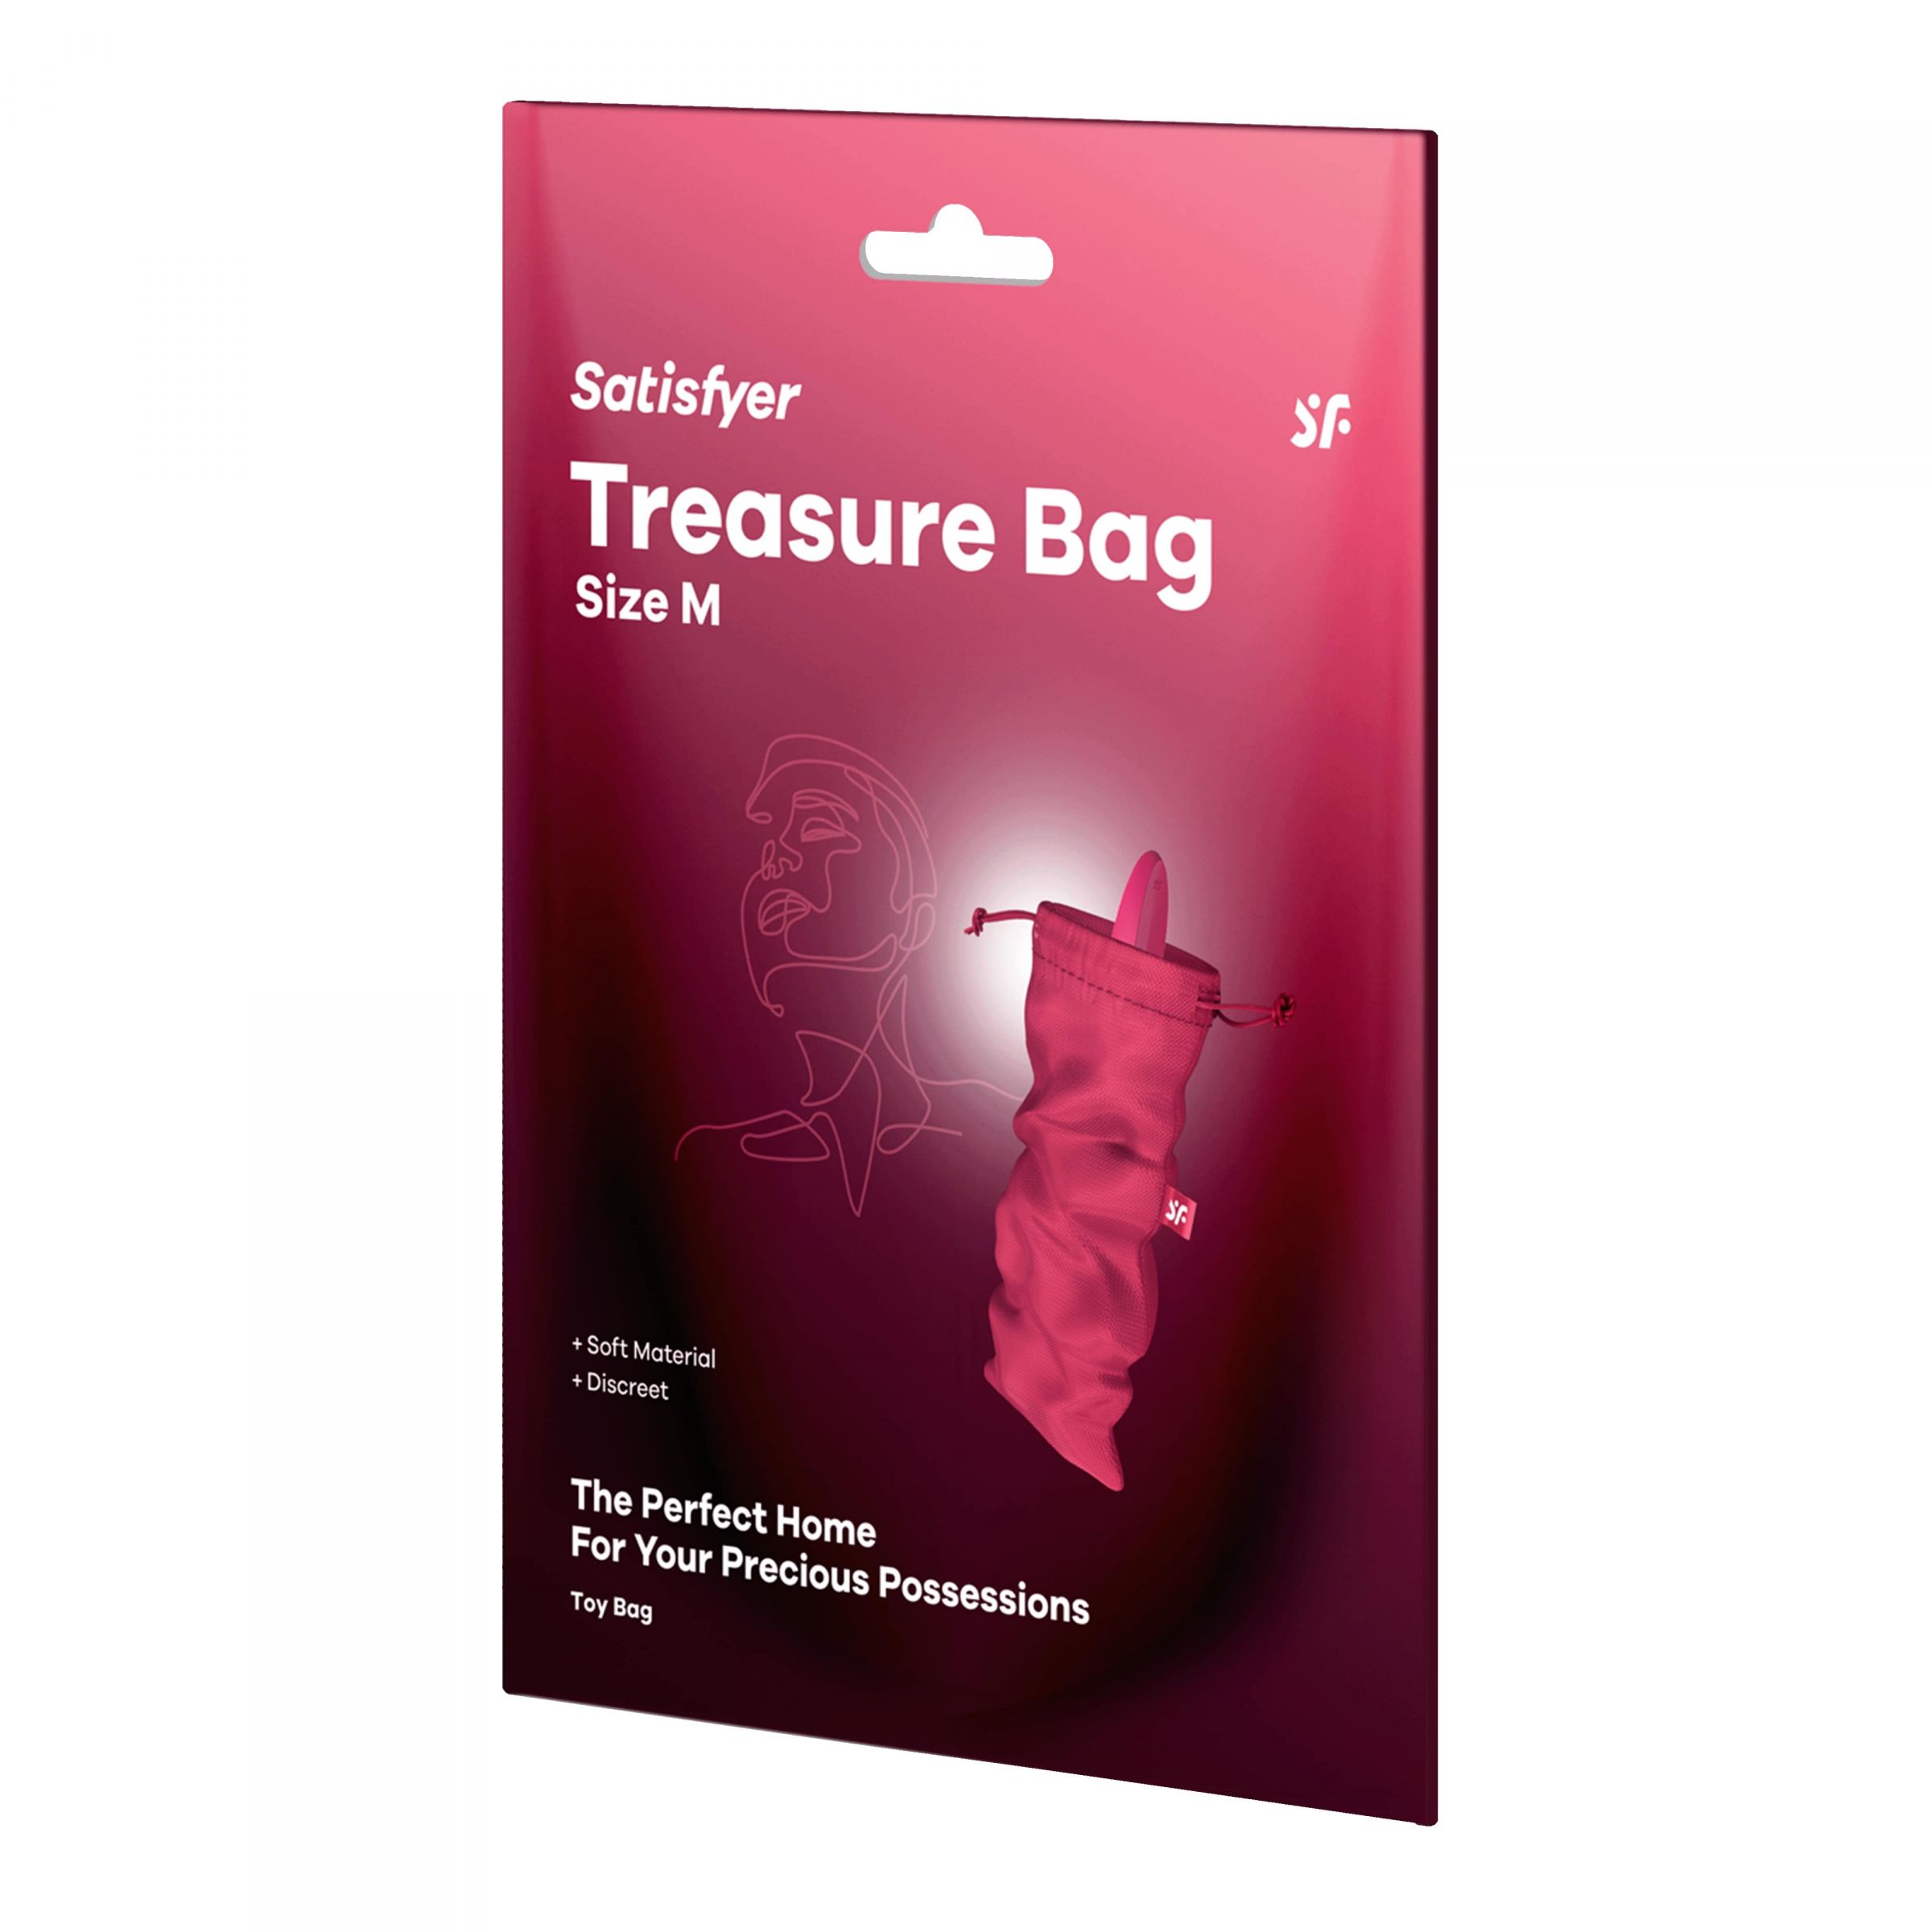 Satisfyer Treasure Bag – специализированный мешочек для хранения девайсов. Данный мешочек сделан из прочного материала, который долго и качественно прослужит вложенным в него изделиям. Материал: нейлон, полиэстер, полипропилен. Размеры - 24х12 см.